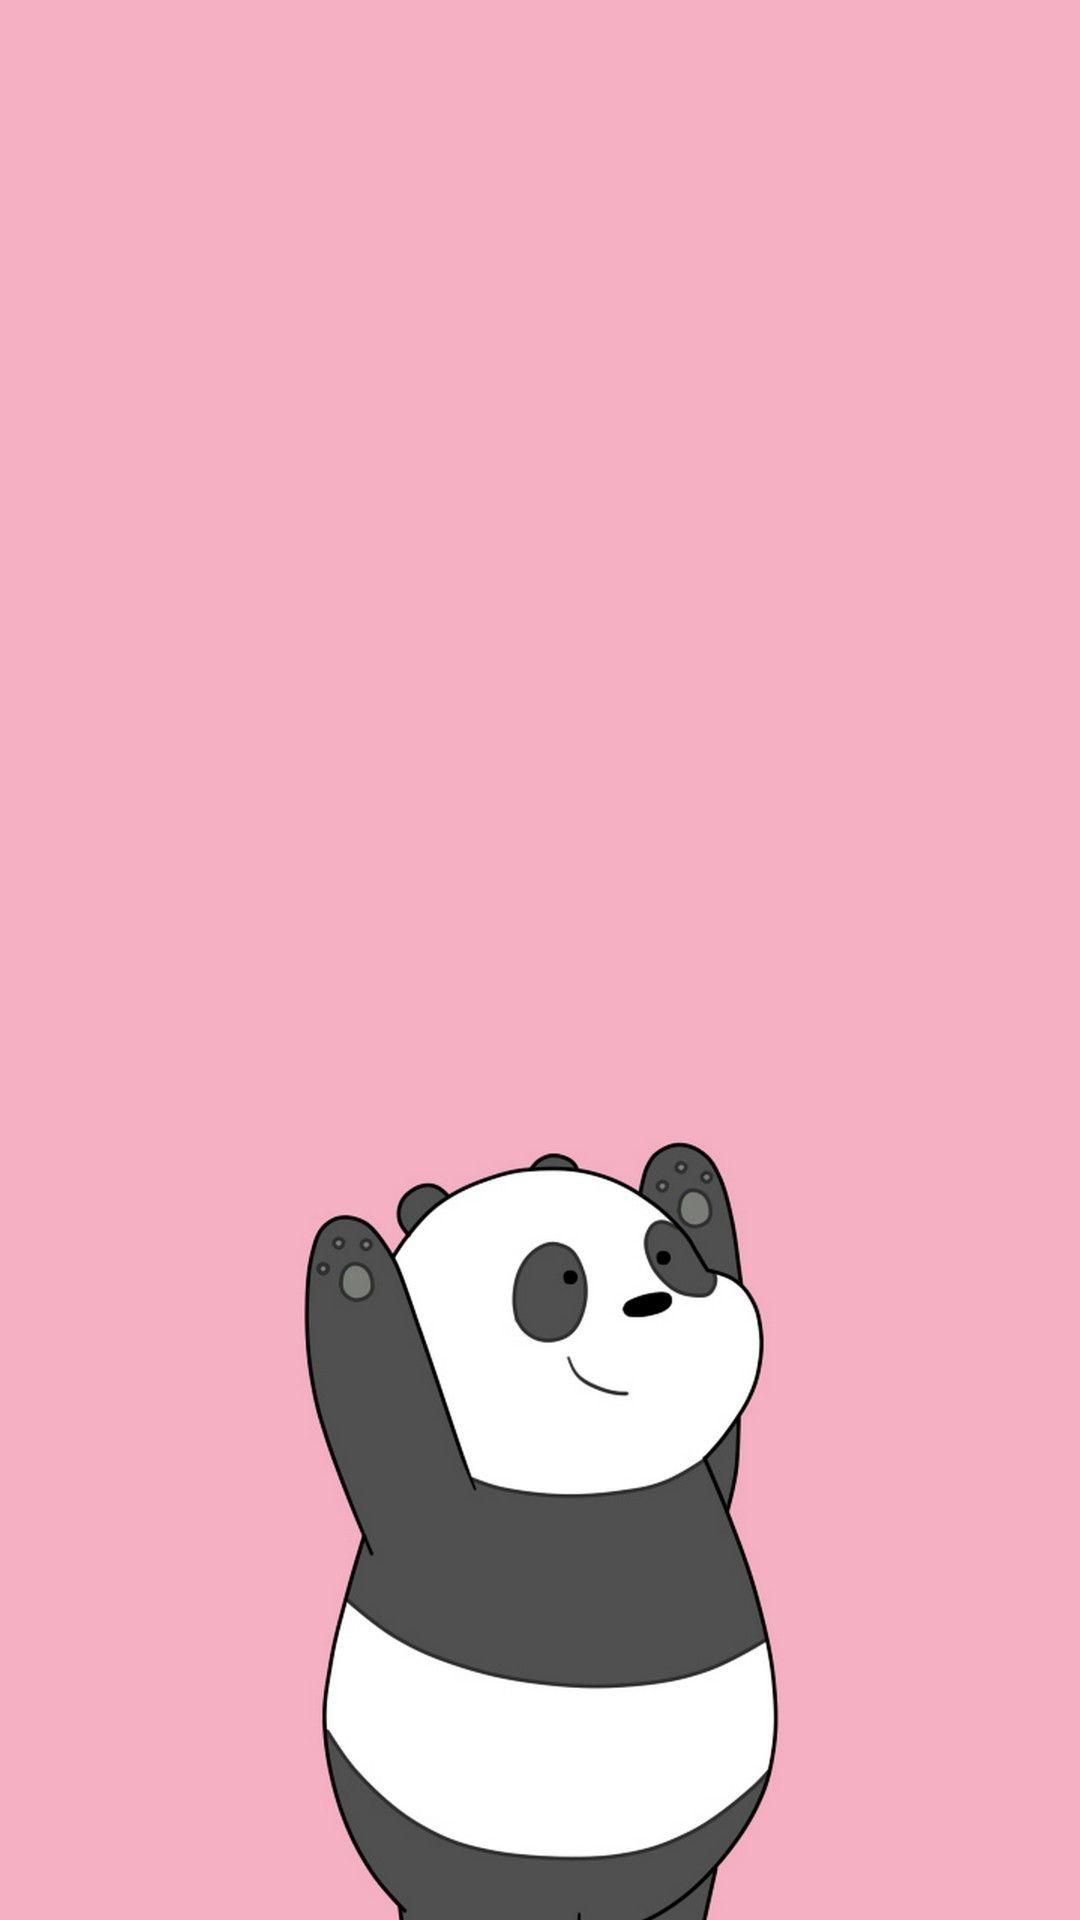 Wallpaper Panda Cute. Panda wallpaper, Panda background, Cartoon wallpaper